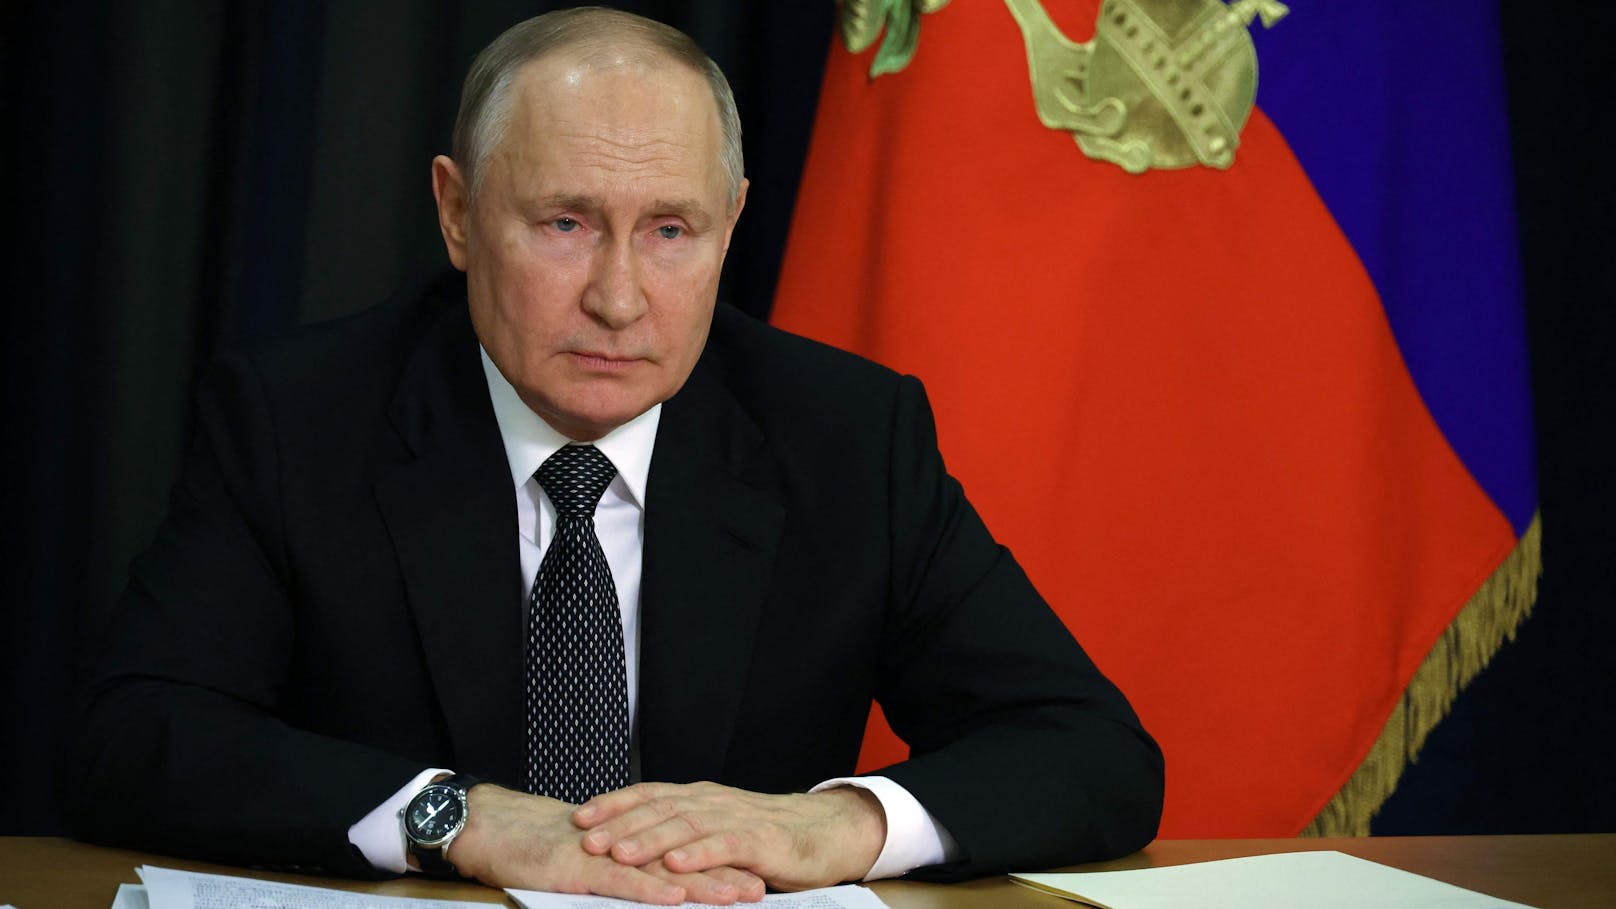 Putin zu Ukraine-Krieg: "Es geht um Leben und Tod"